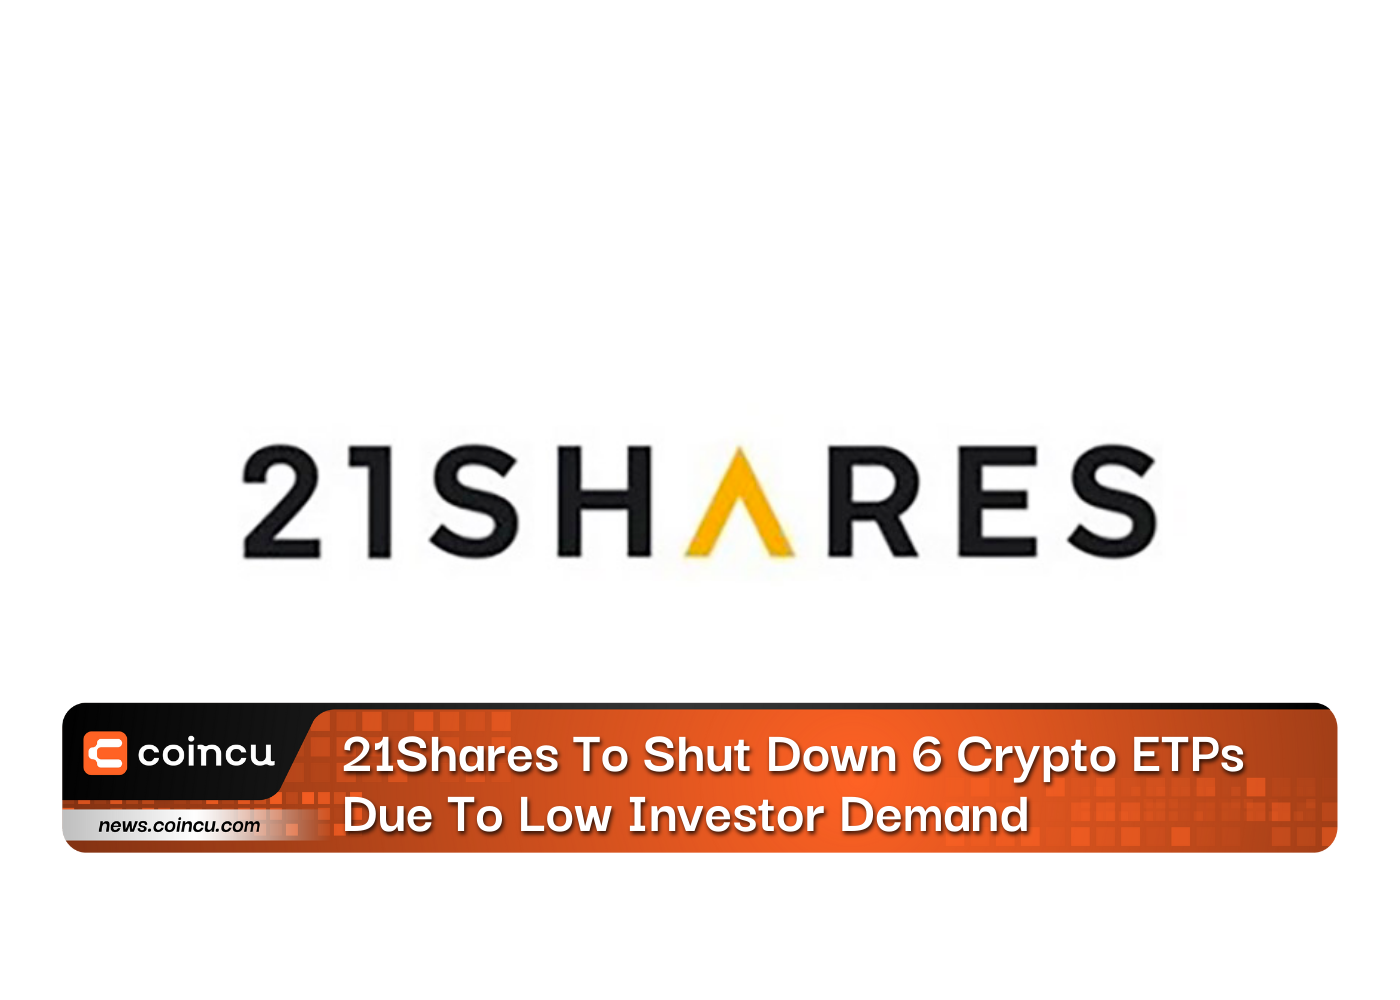 21Shares, Düşük Yatırımcı Talebi Nedeniyle 6 Kripto ETP'sini Kapatacak